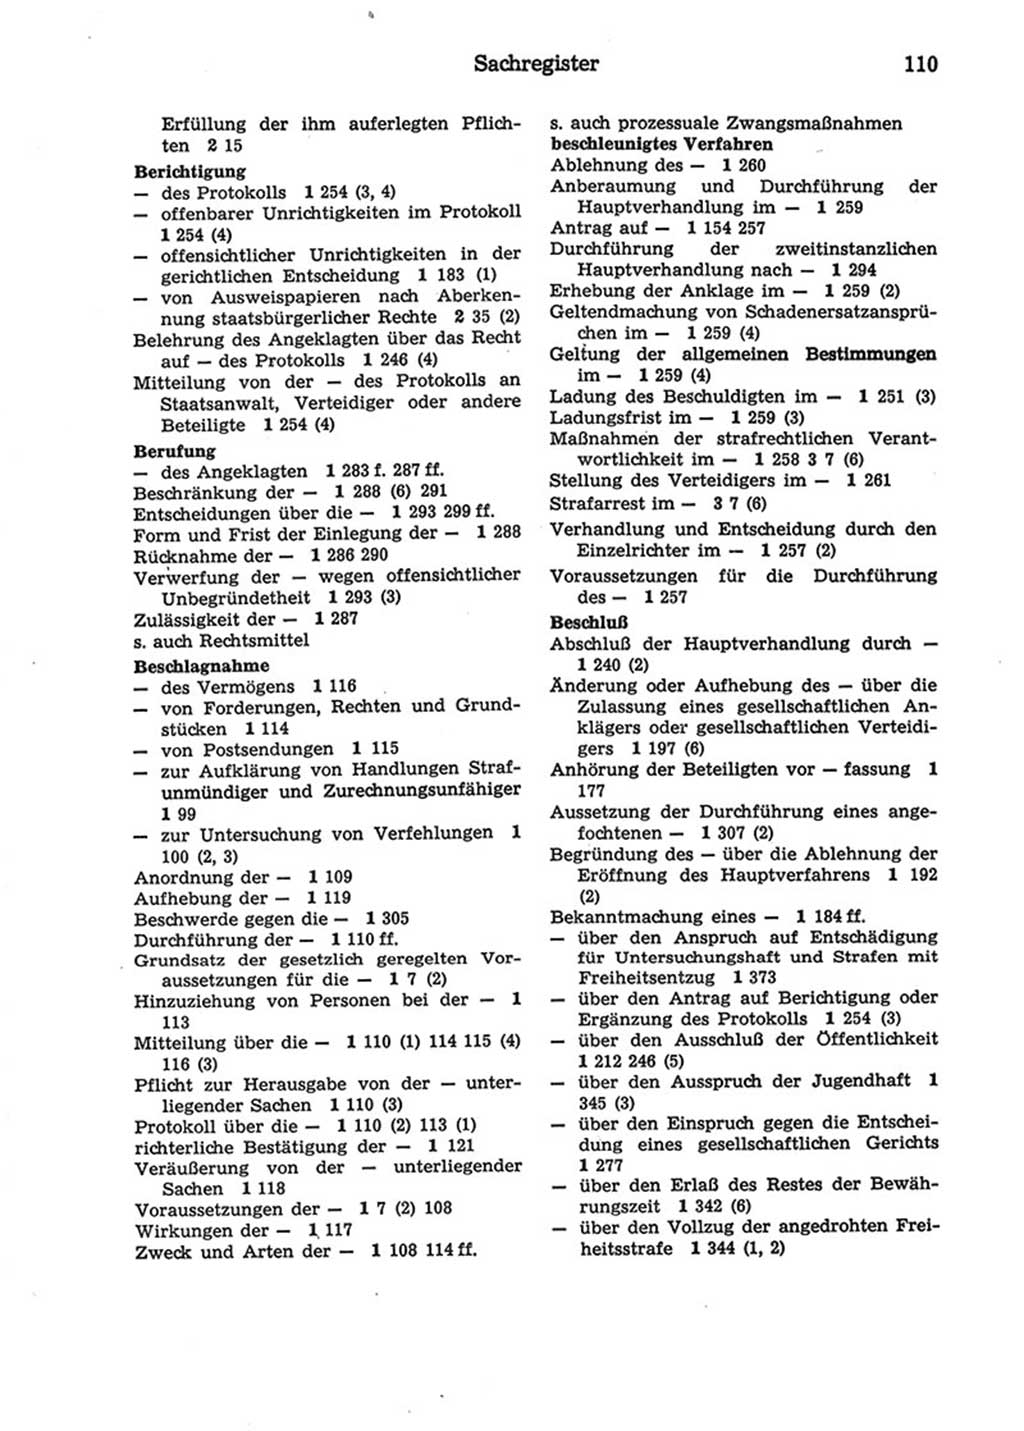 Strafprozeßordnung (StPO) der Deutschen Demokratischen Republik (DDR) 1975, Seite 110 (StPO DDR 1974, S. 110)